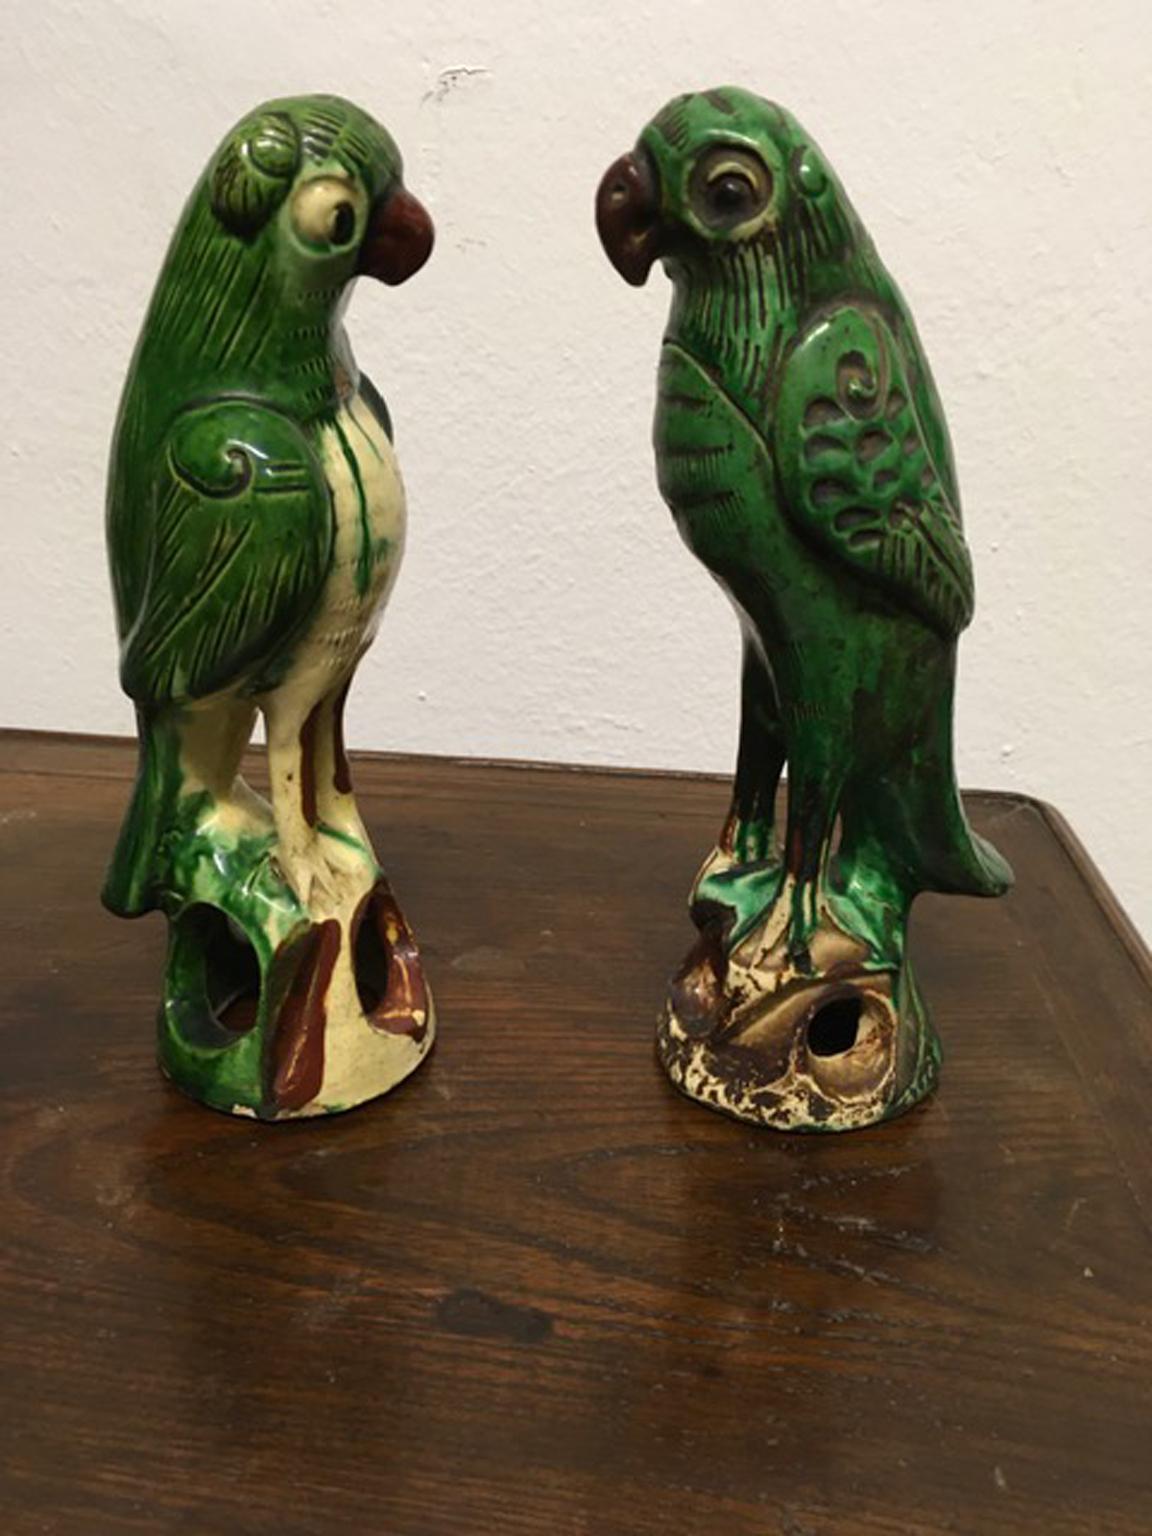 Dieses schicke Papageienpaar ist mit seiner grünen Emaille sehr dekorativ und liegt in einem eleganten Raum voll im Trend. Die Papageien wurden nicht restauriert und es gibt einige Zeichen der Zeit, aber sie haben ihre Schönheit nicht verloren.

Mit